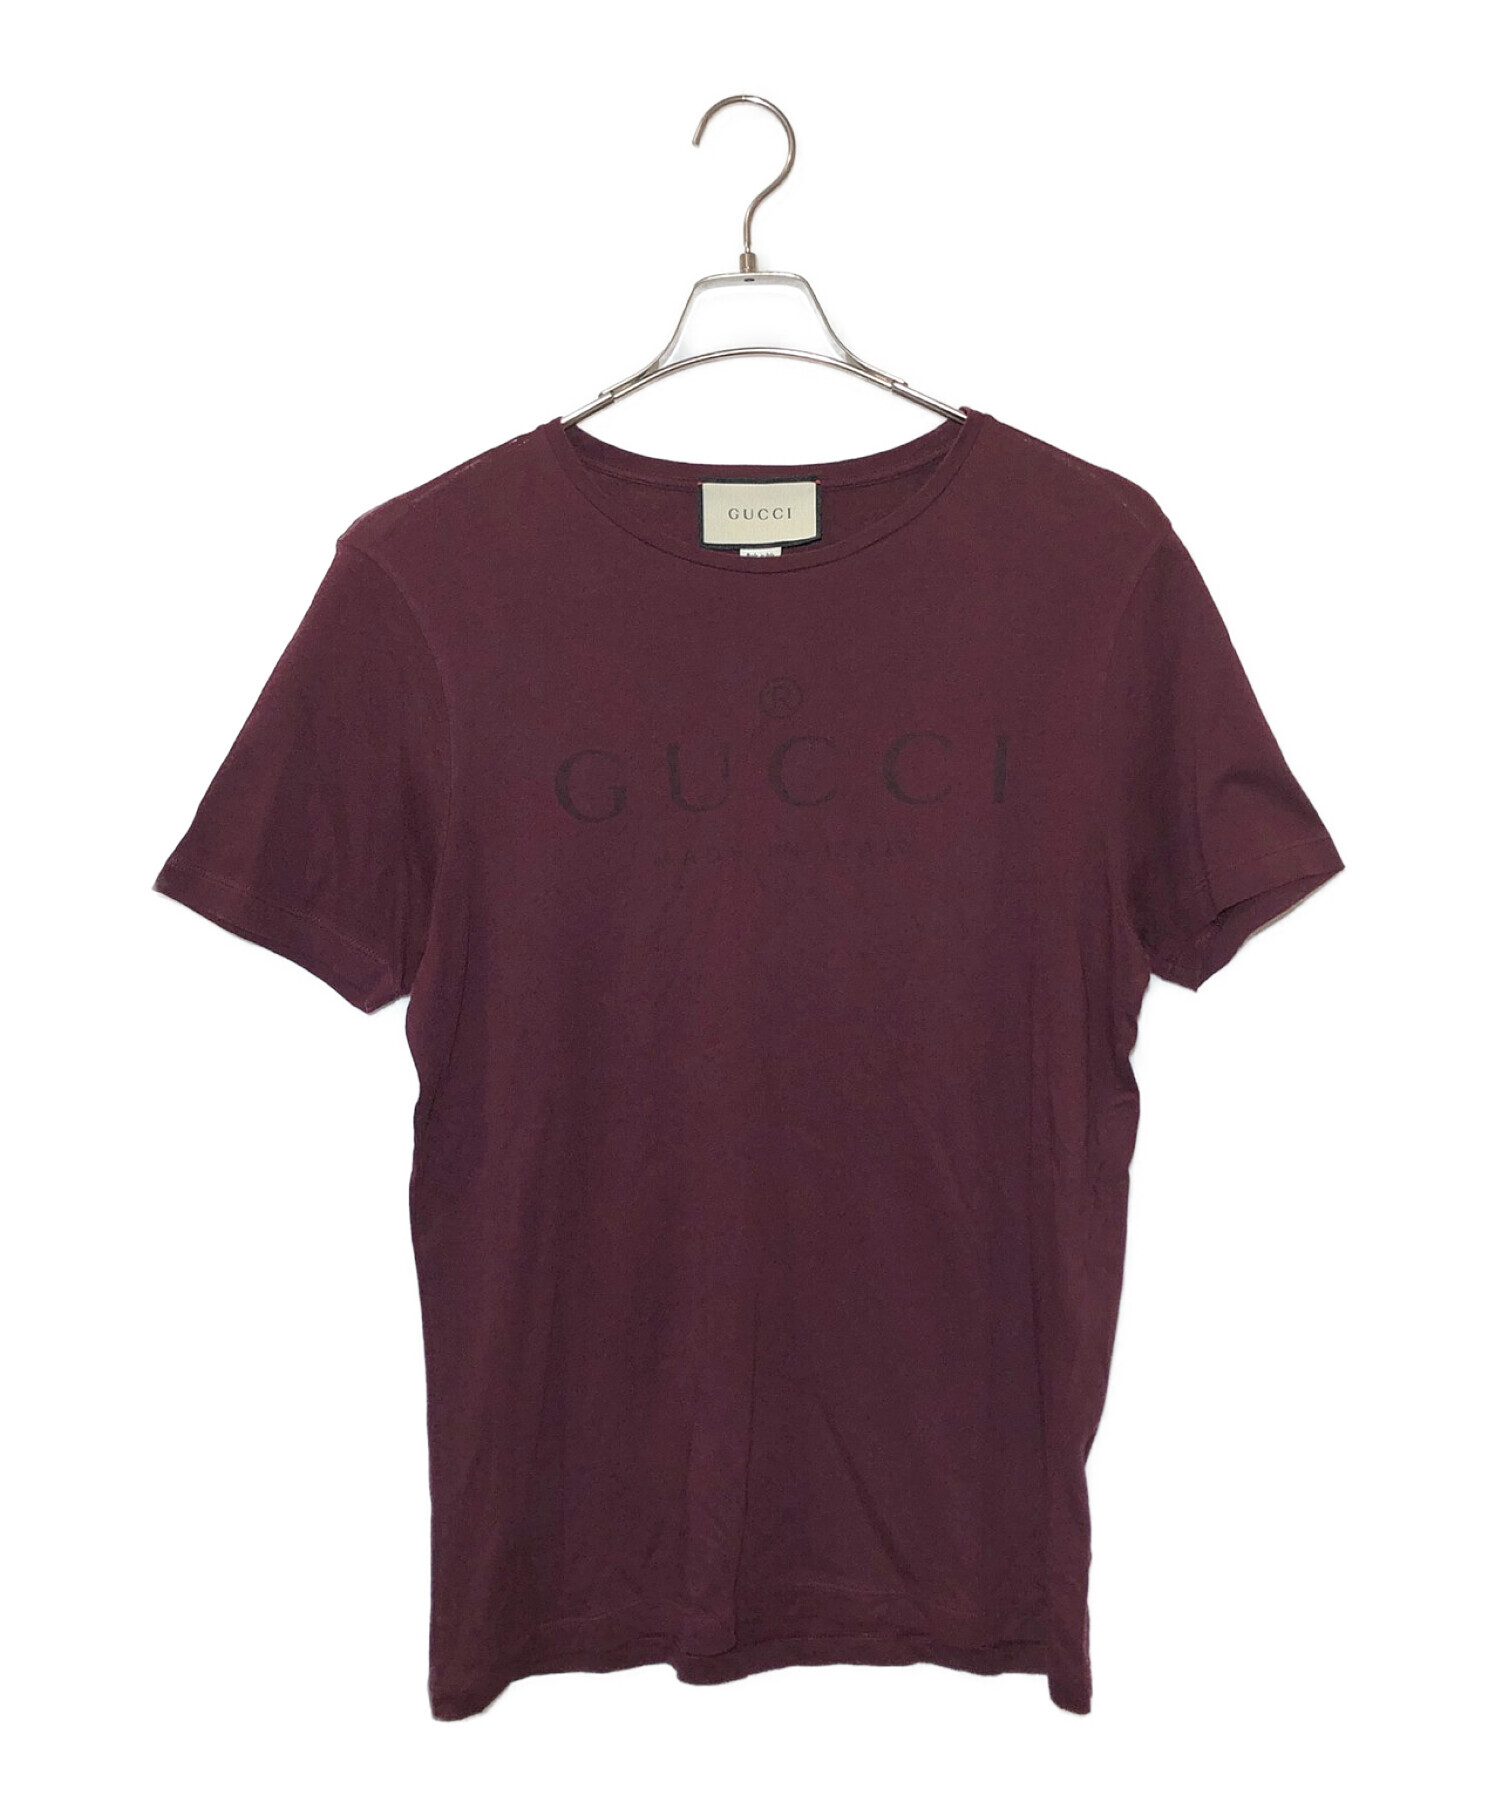 GUCCI (グッチ) 半袖Tシャツ ボルドー サイズ:M